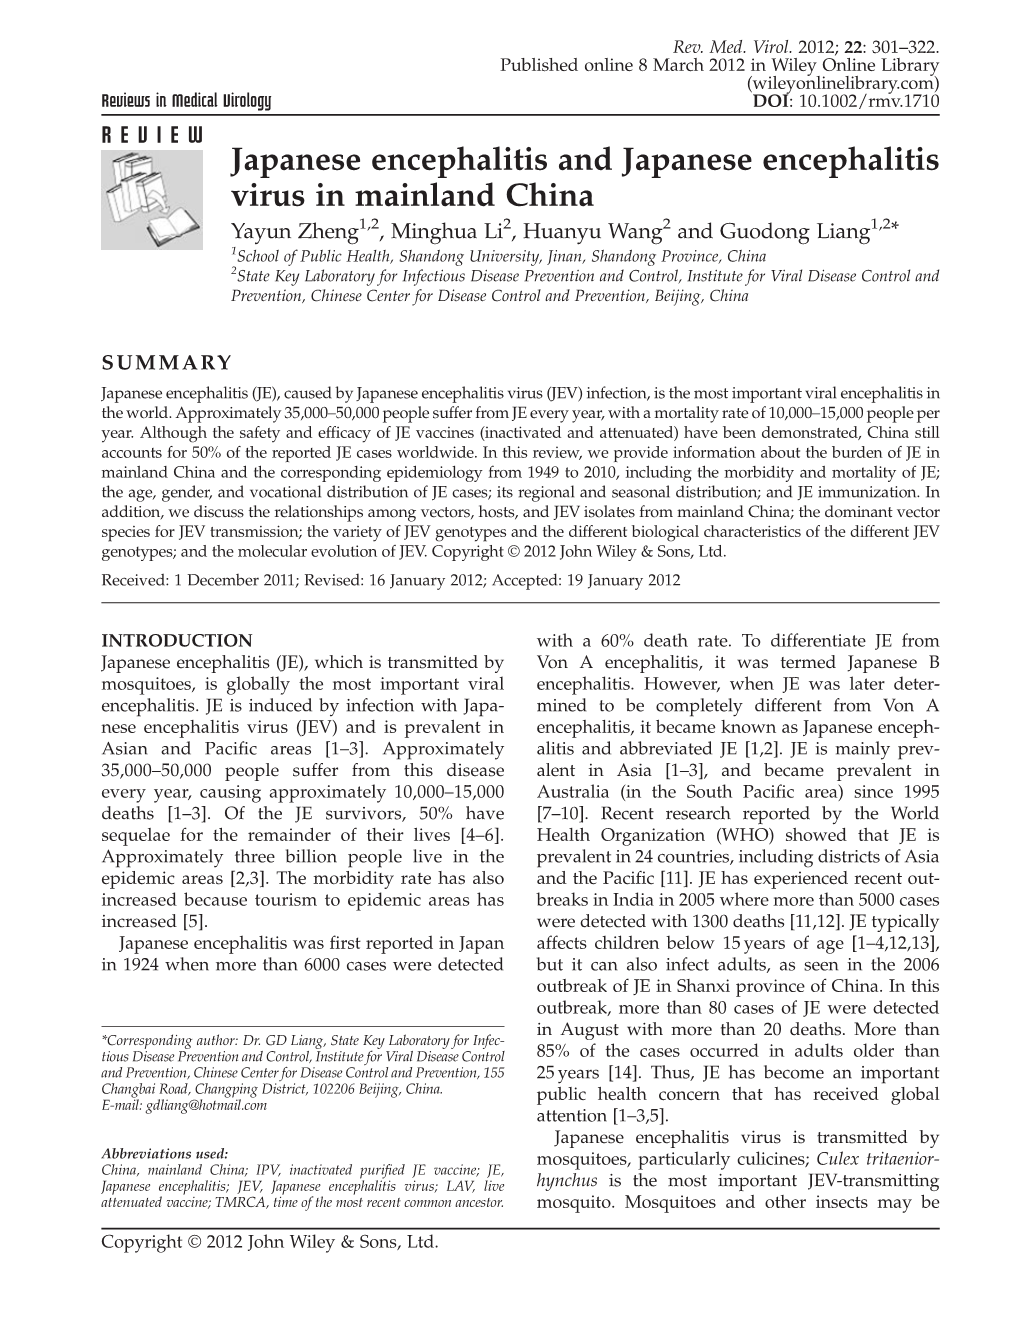 Japanese Encephalitis and Japanese Encephalitis Virus in Mainland China